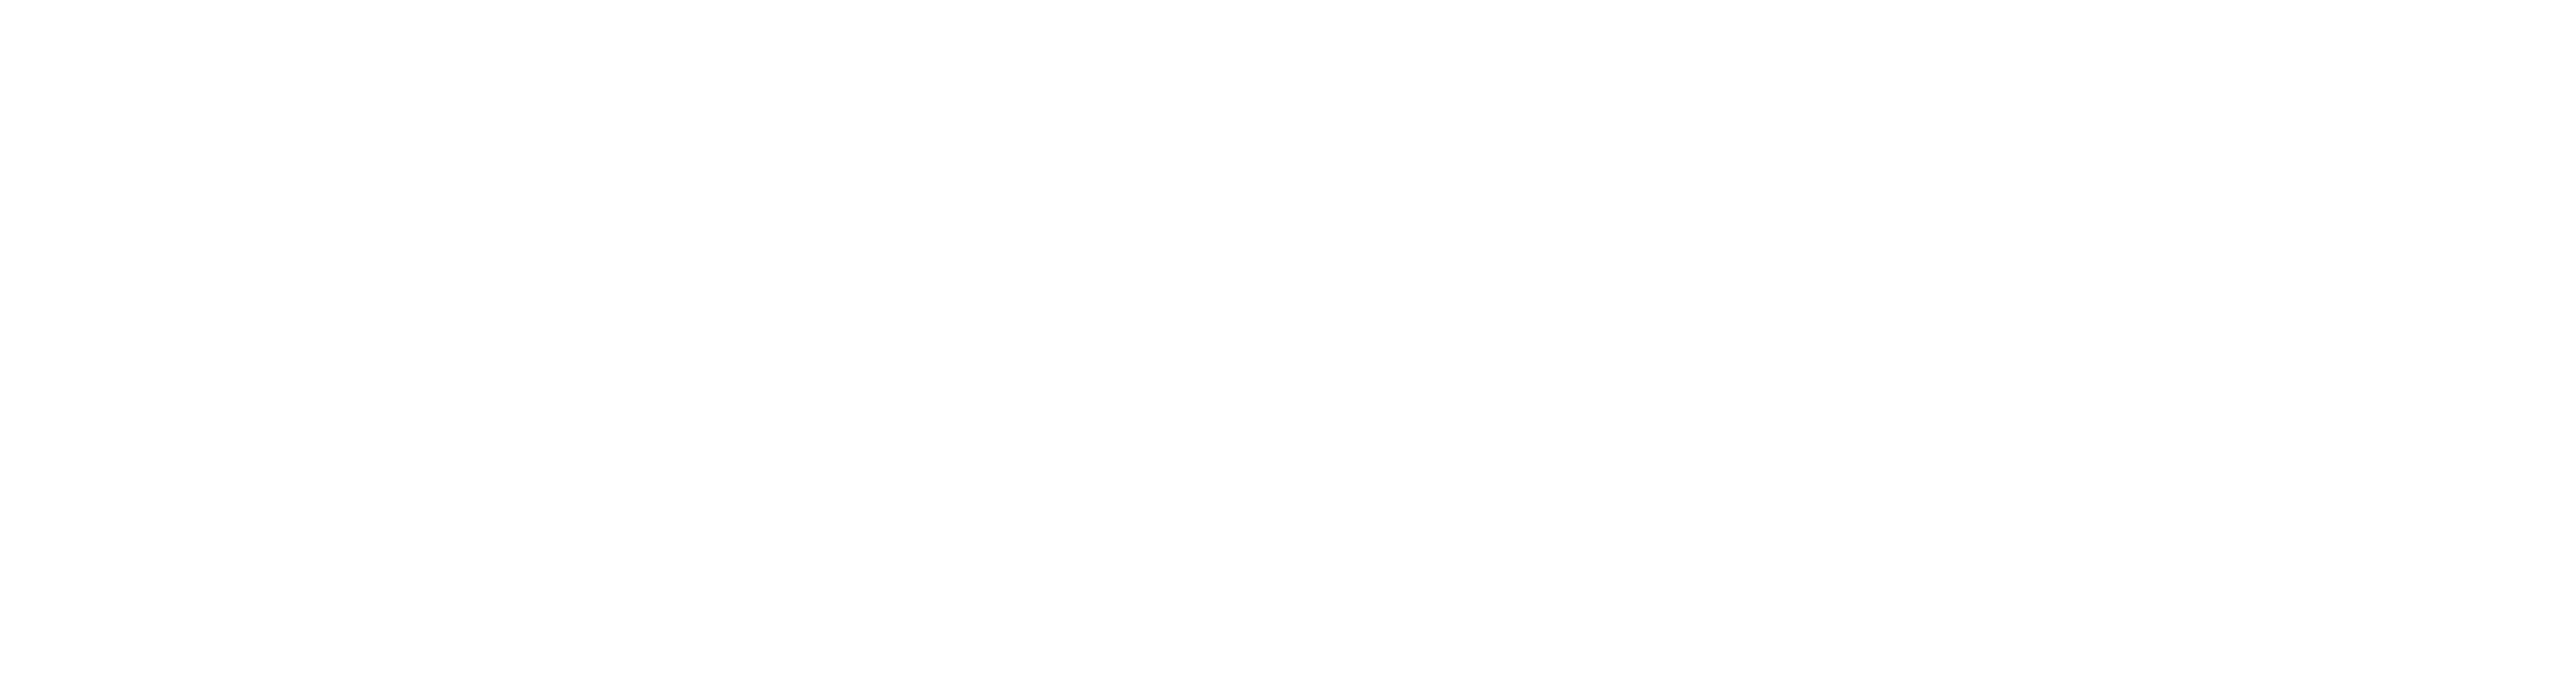 Escape from Alcatraz logo